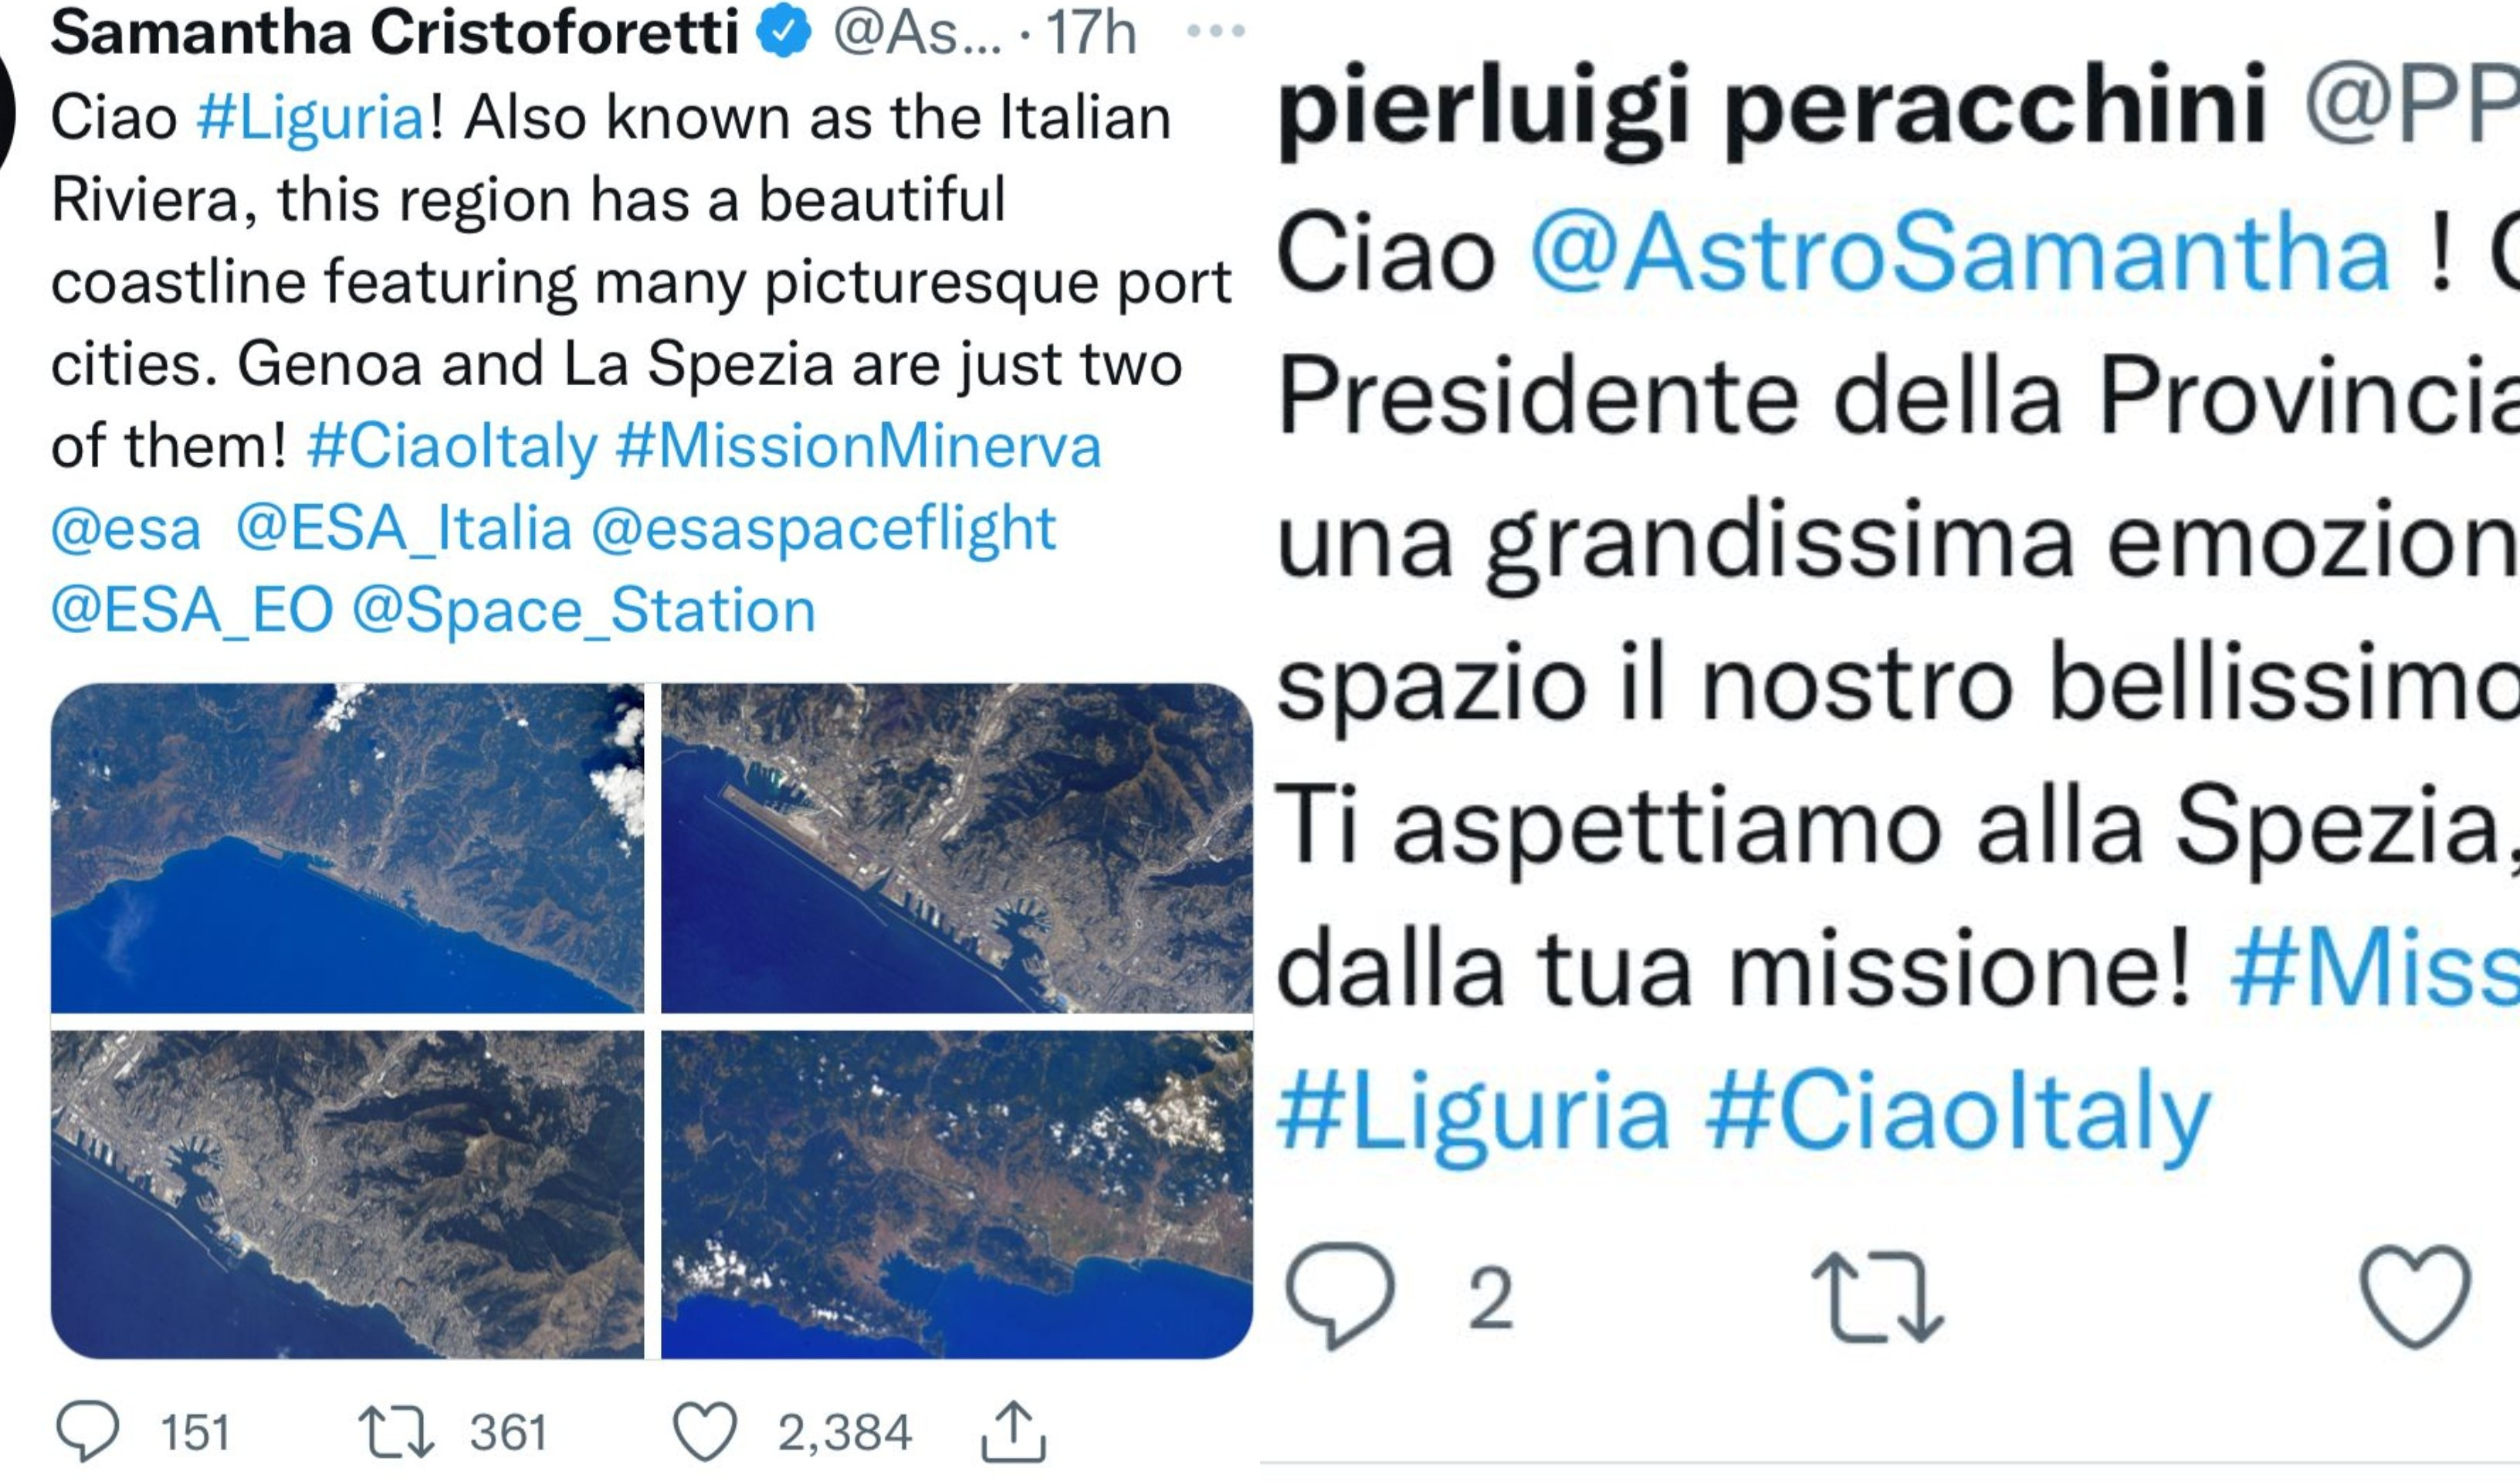 Samantha Cristoforetti saluta la Liguria dallo spazio: il tweet con le foto di Genova e La Spezia